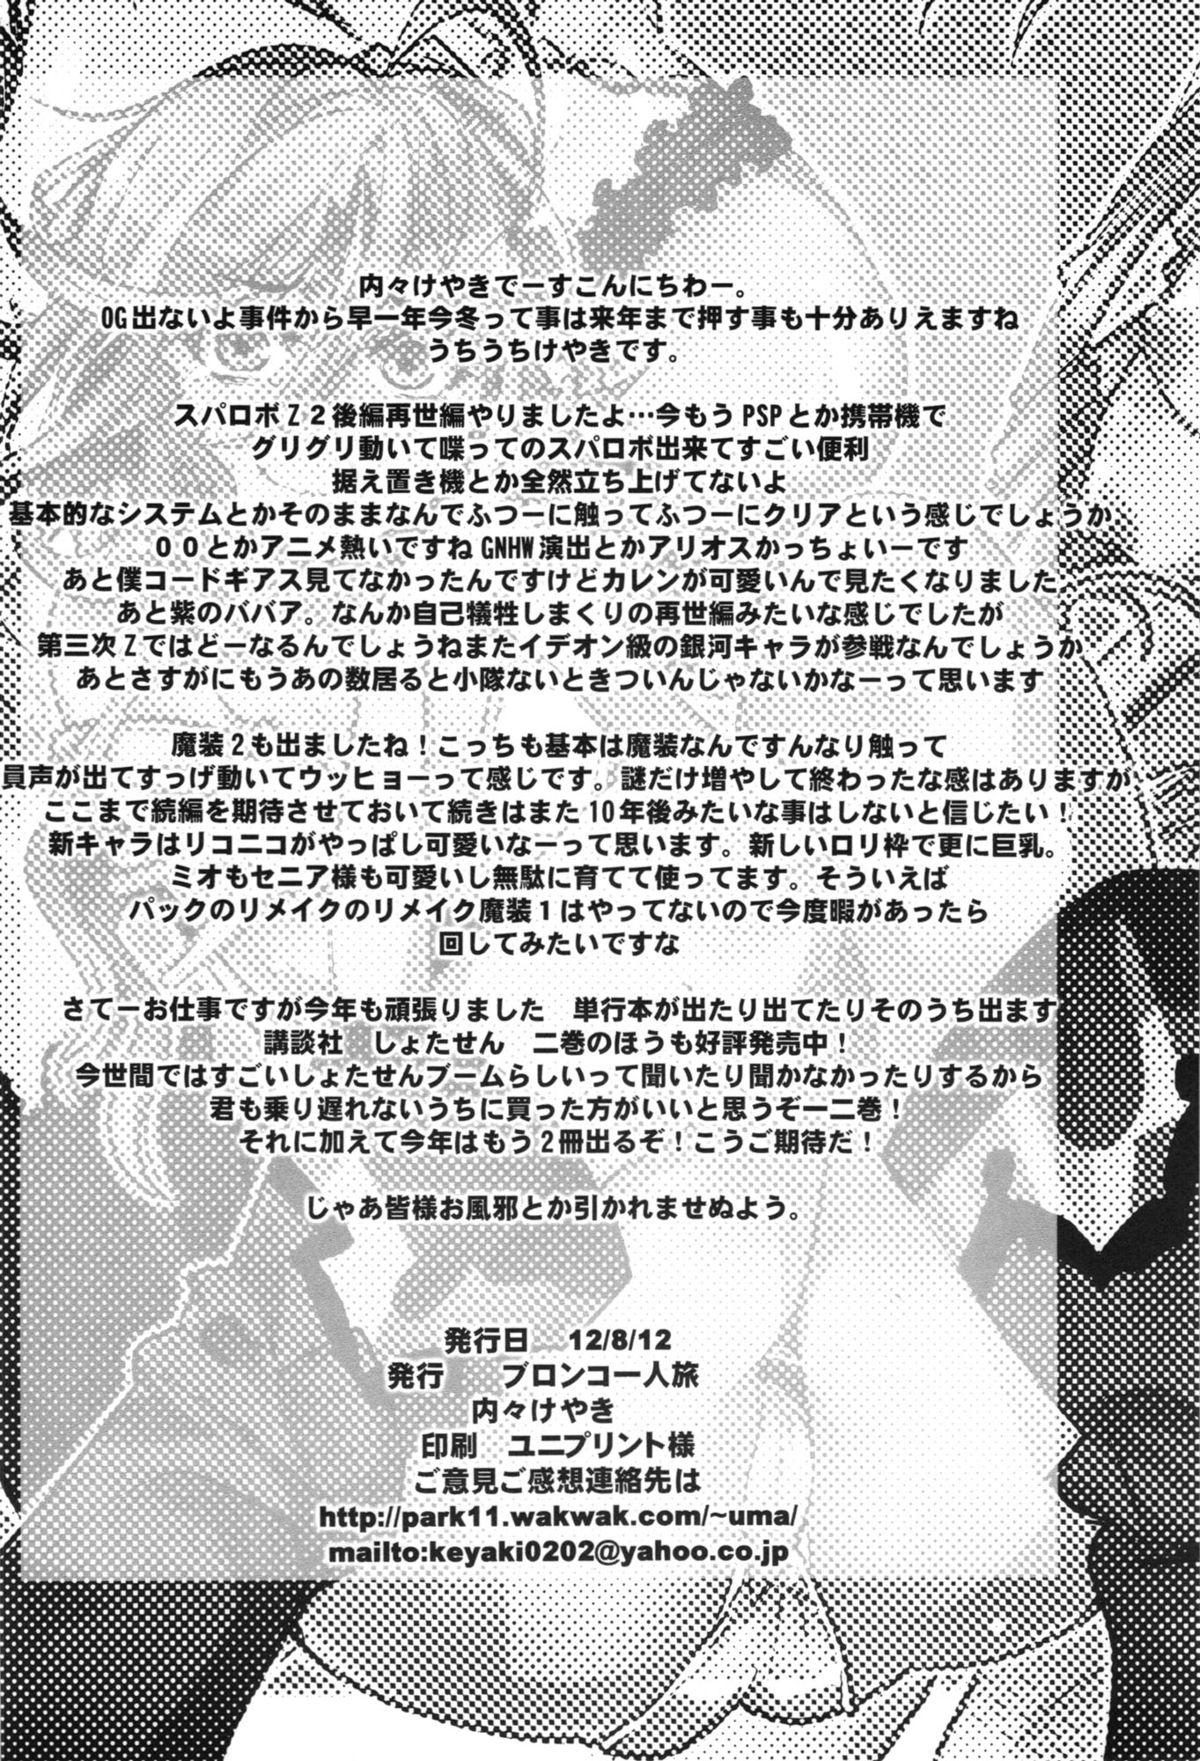 Dirty Dainiji Boku no Watashi no Super Bobobbo Taisen ZZ - Cio Mar Mari 3 Oppai Kessen hen - Super robot wars Indo - Page 70